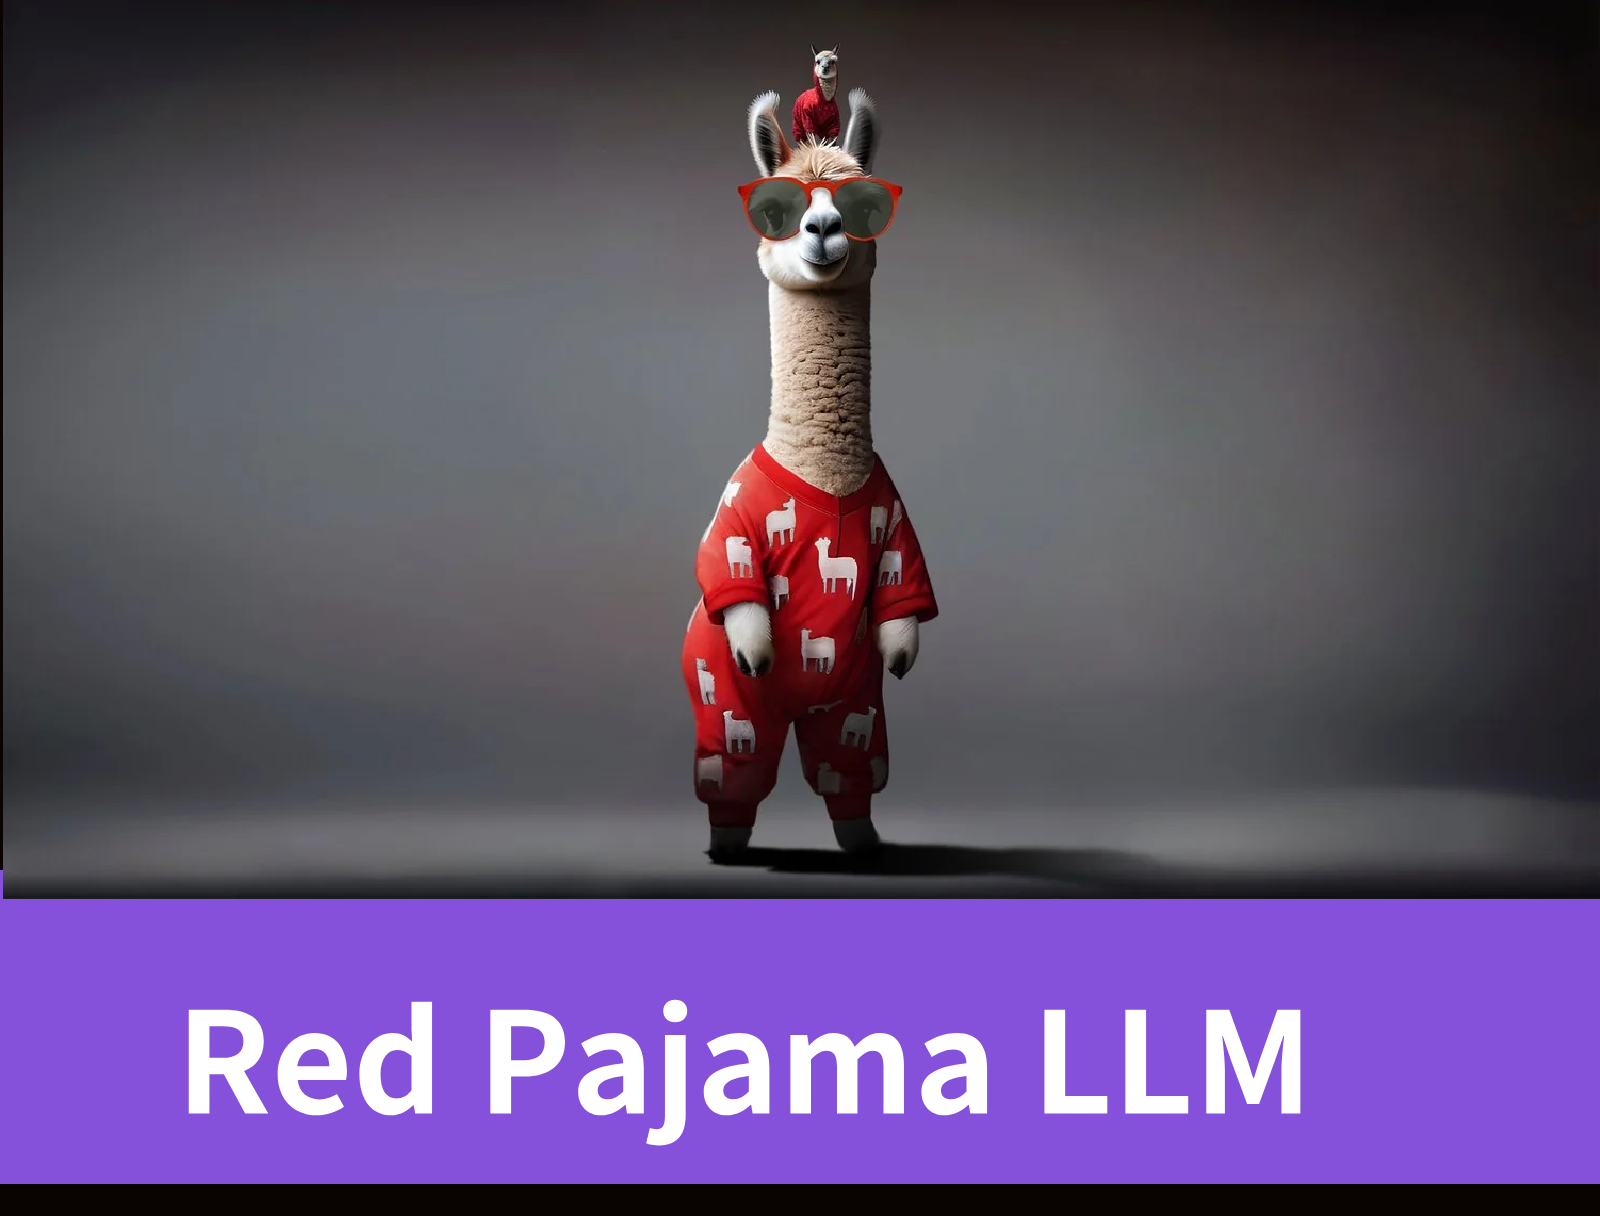 Red Pajama LLM: Public Dataset Analysis Revealed